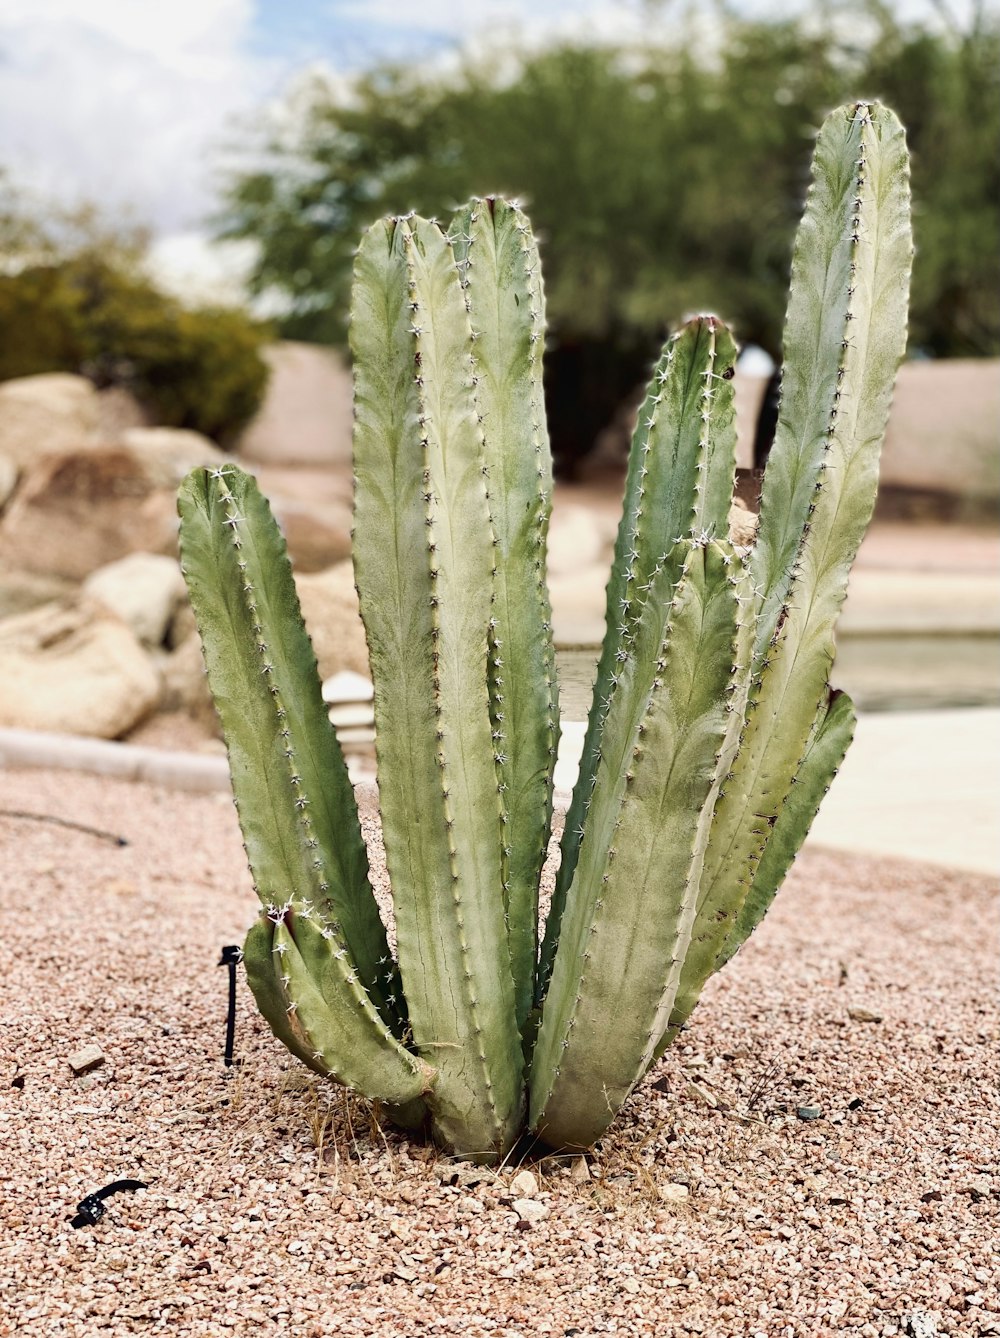 green cactus on brown soil during daytime